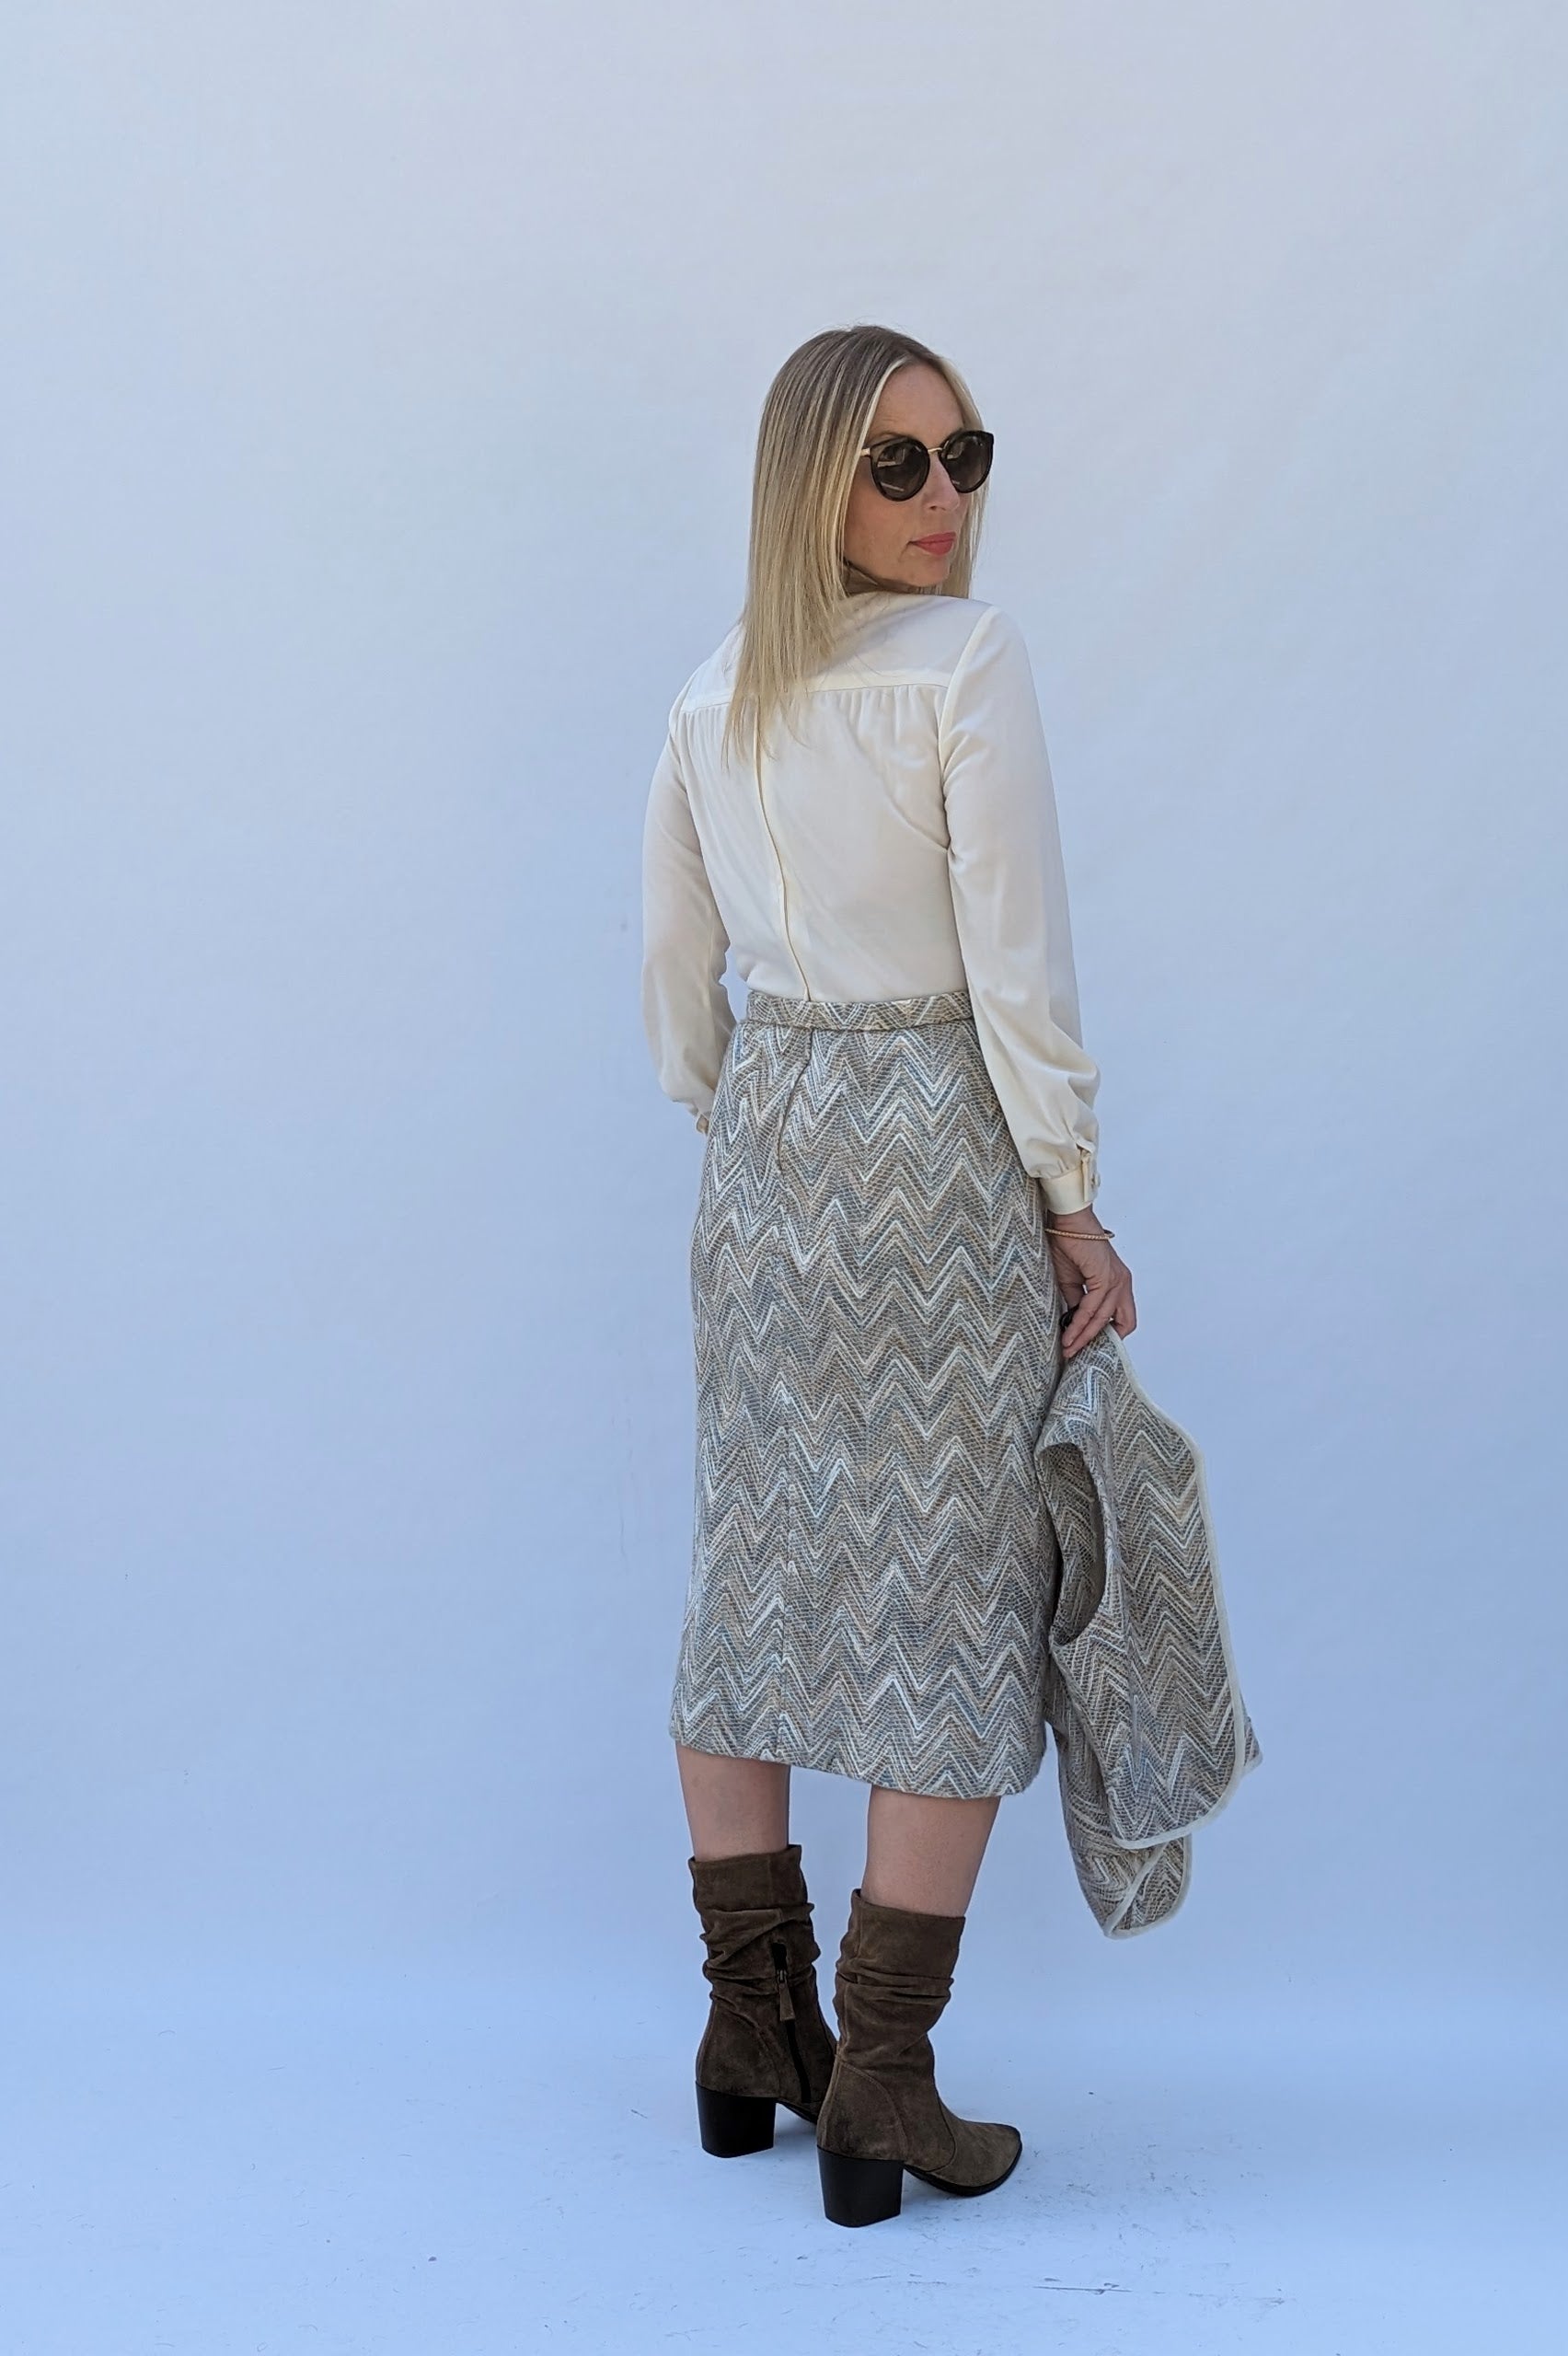 Berkertex 70s cream top and woven skirt dress with waistcoat